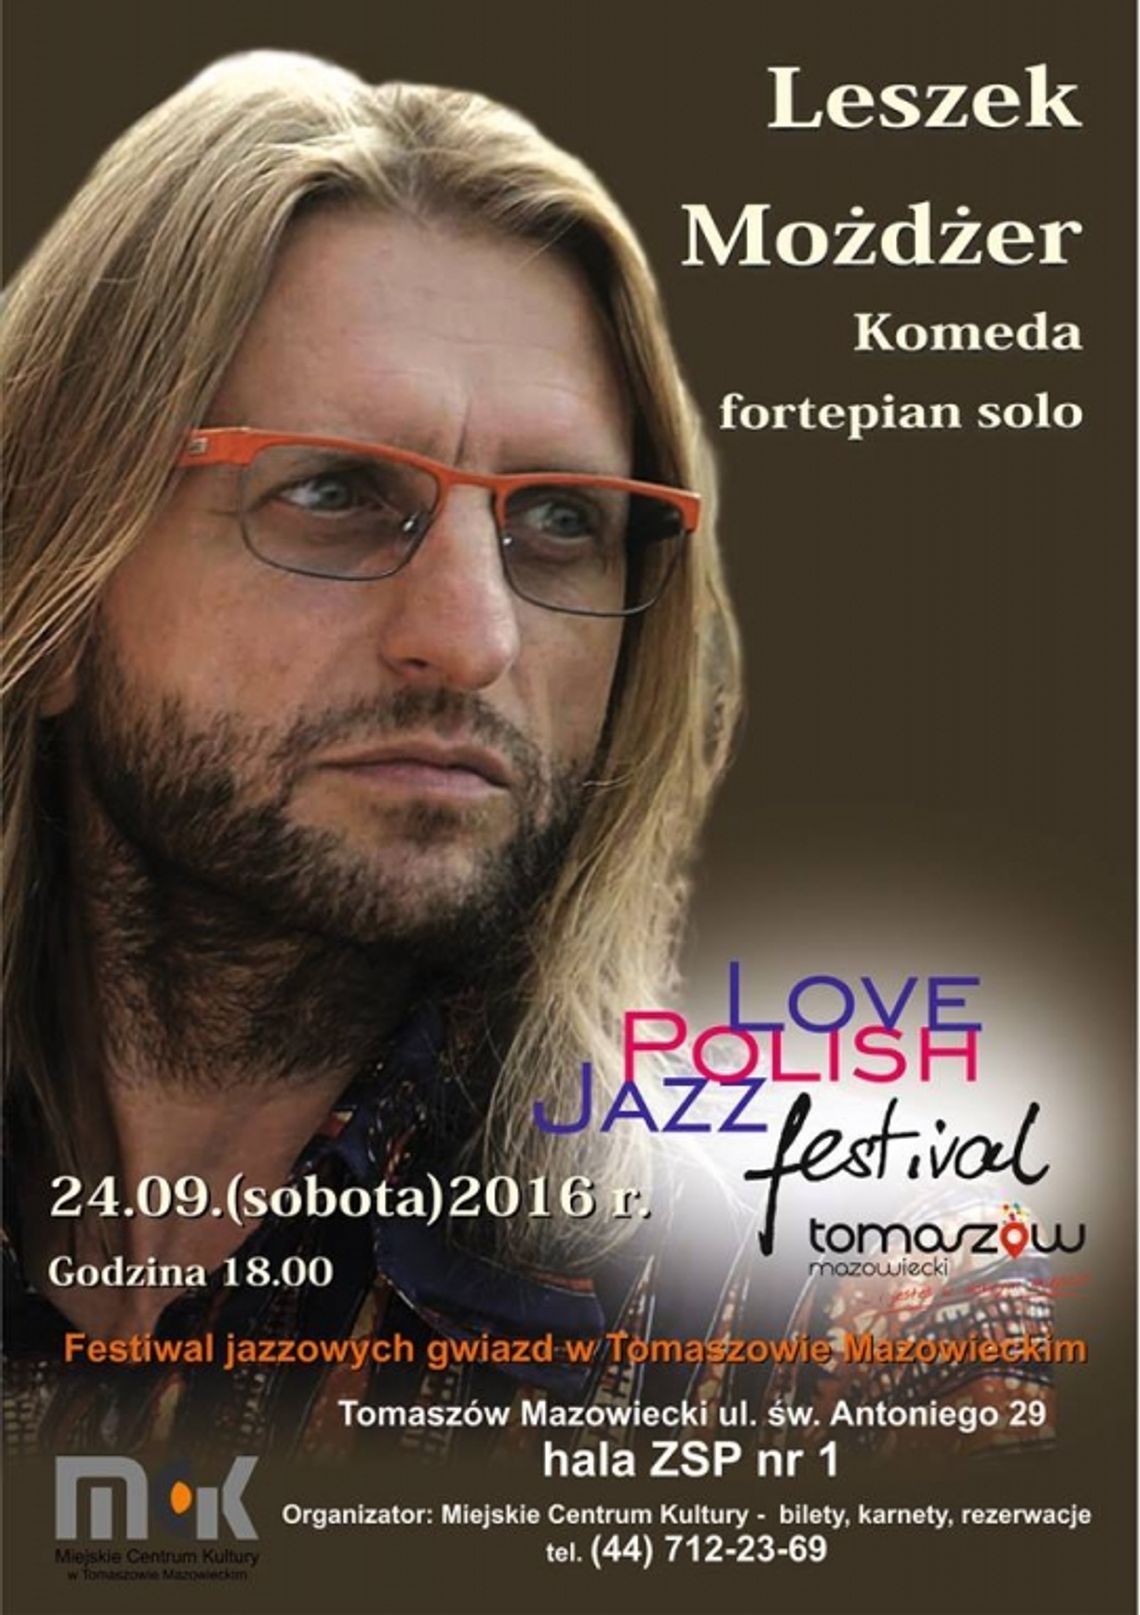 Love Polish Jazz Festival już we wrześniu w Tomaszowie Mazowieckim